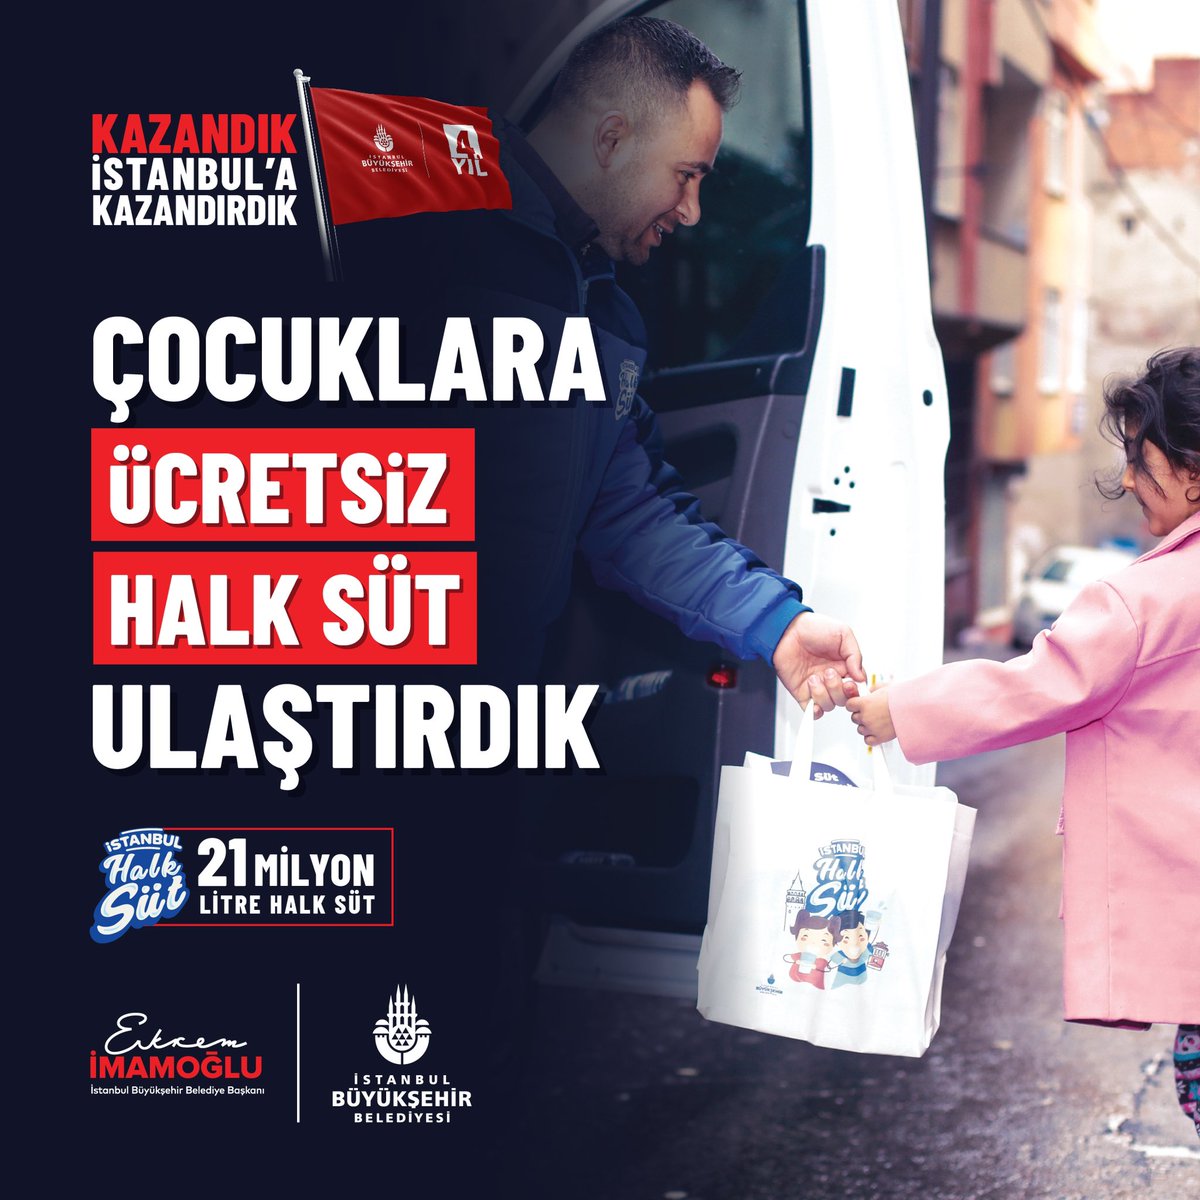 Kazandık, İstanbul’a kazandırdık.

Çocuklara ücretsiz 21 milyon litre #HalkSüt ulaştırdık.